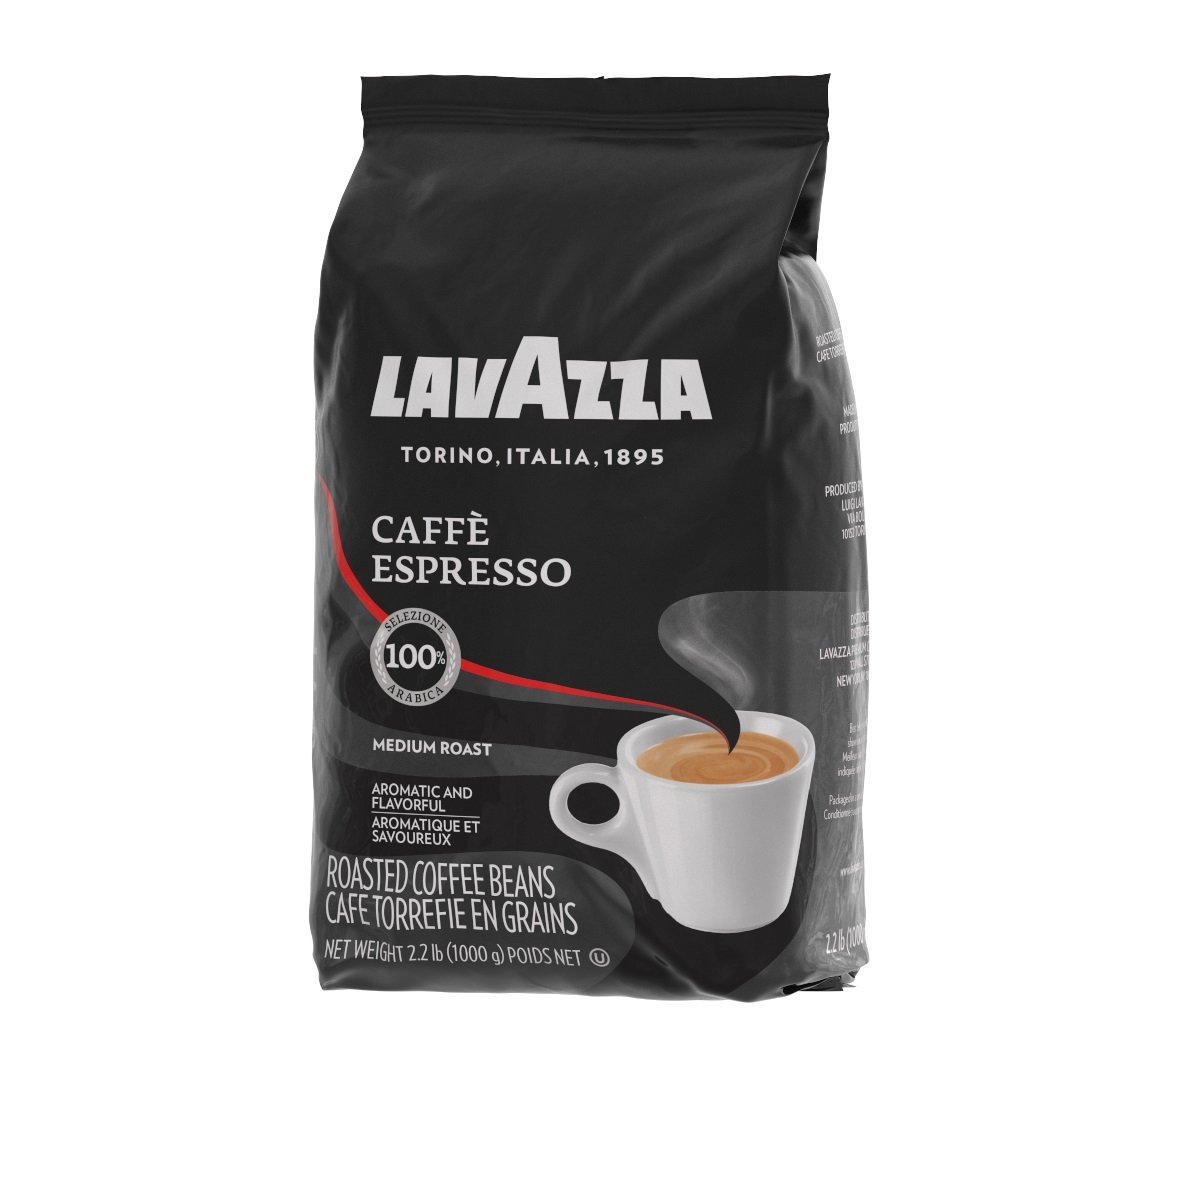 2 эспрессо. Lavazza Espresso Blend. Кофе Lavazza Espresso. Lavazza Coffee Beans Espresso. Lavazza Classico Medium Roast кофе молотый.